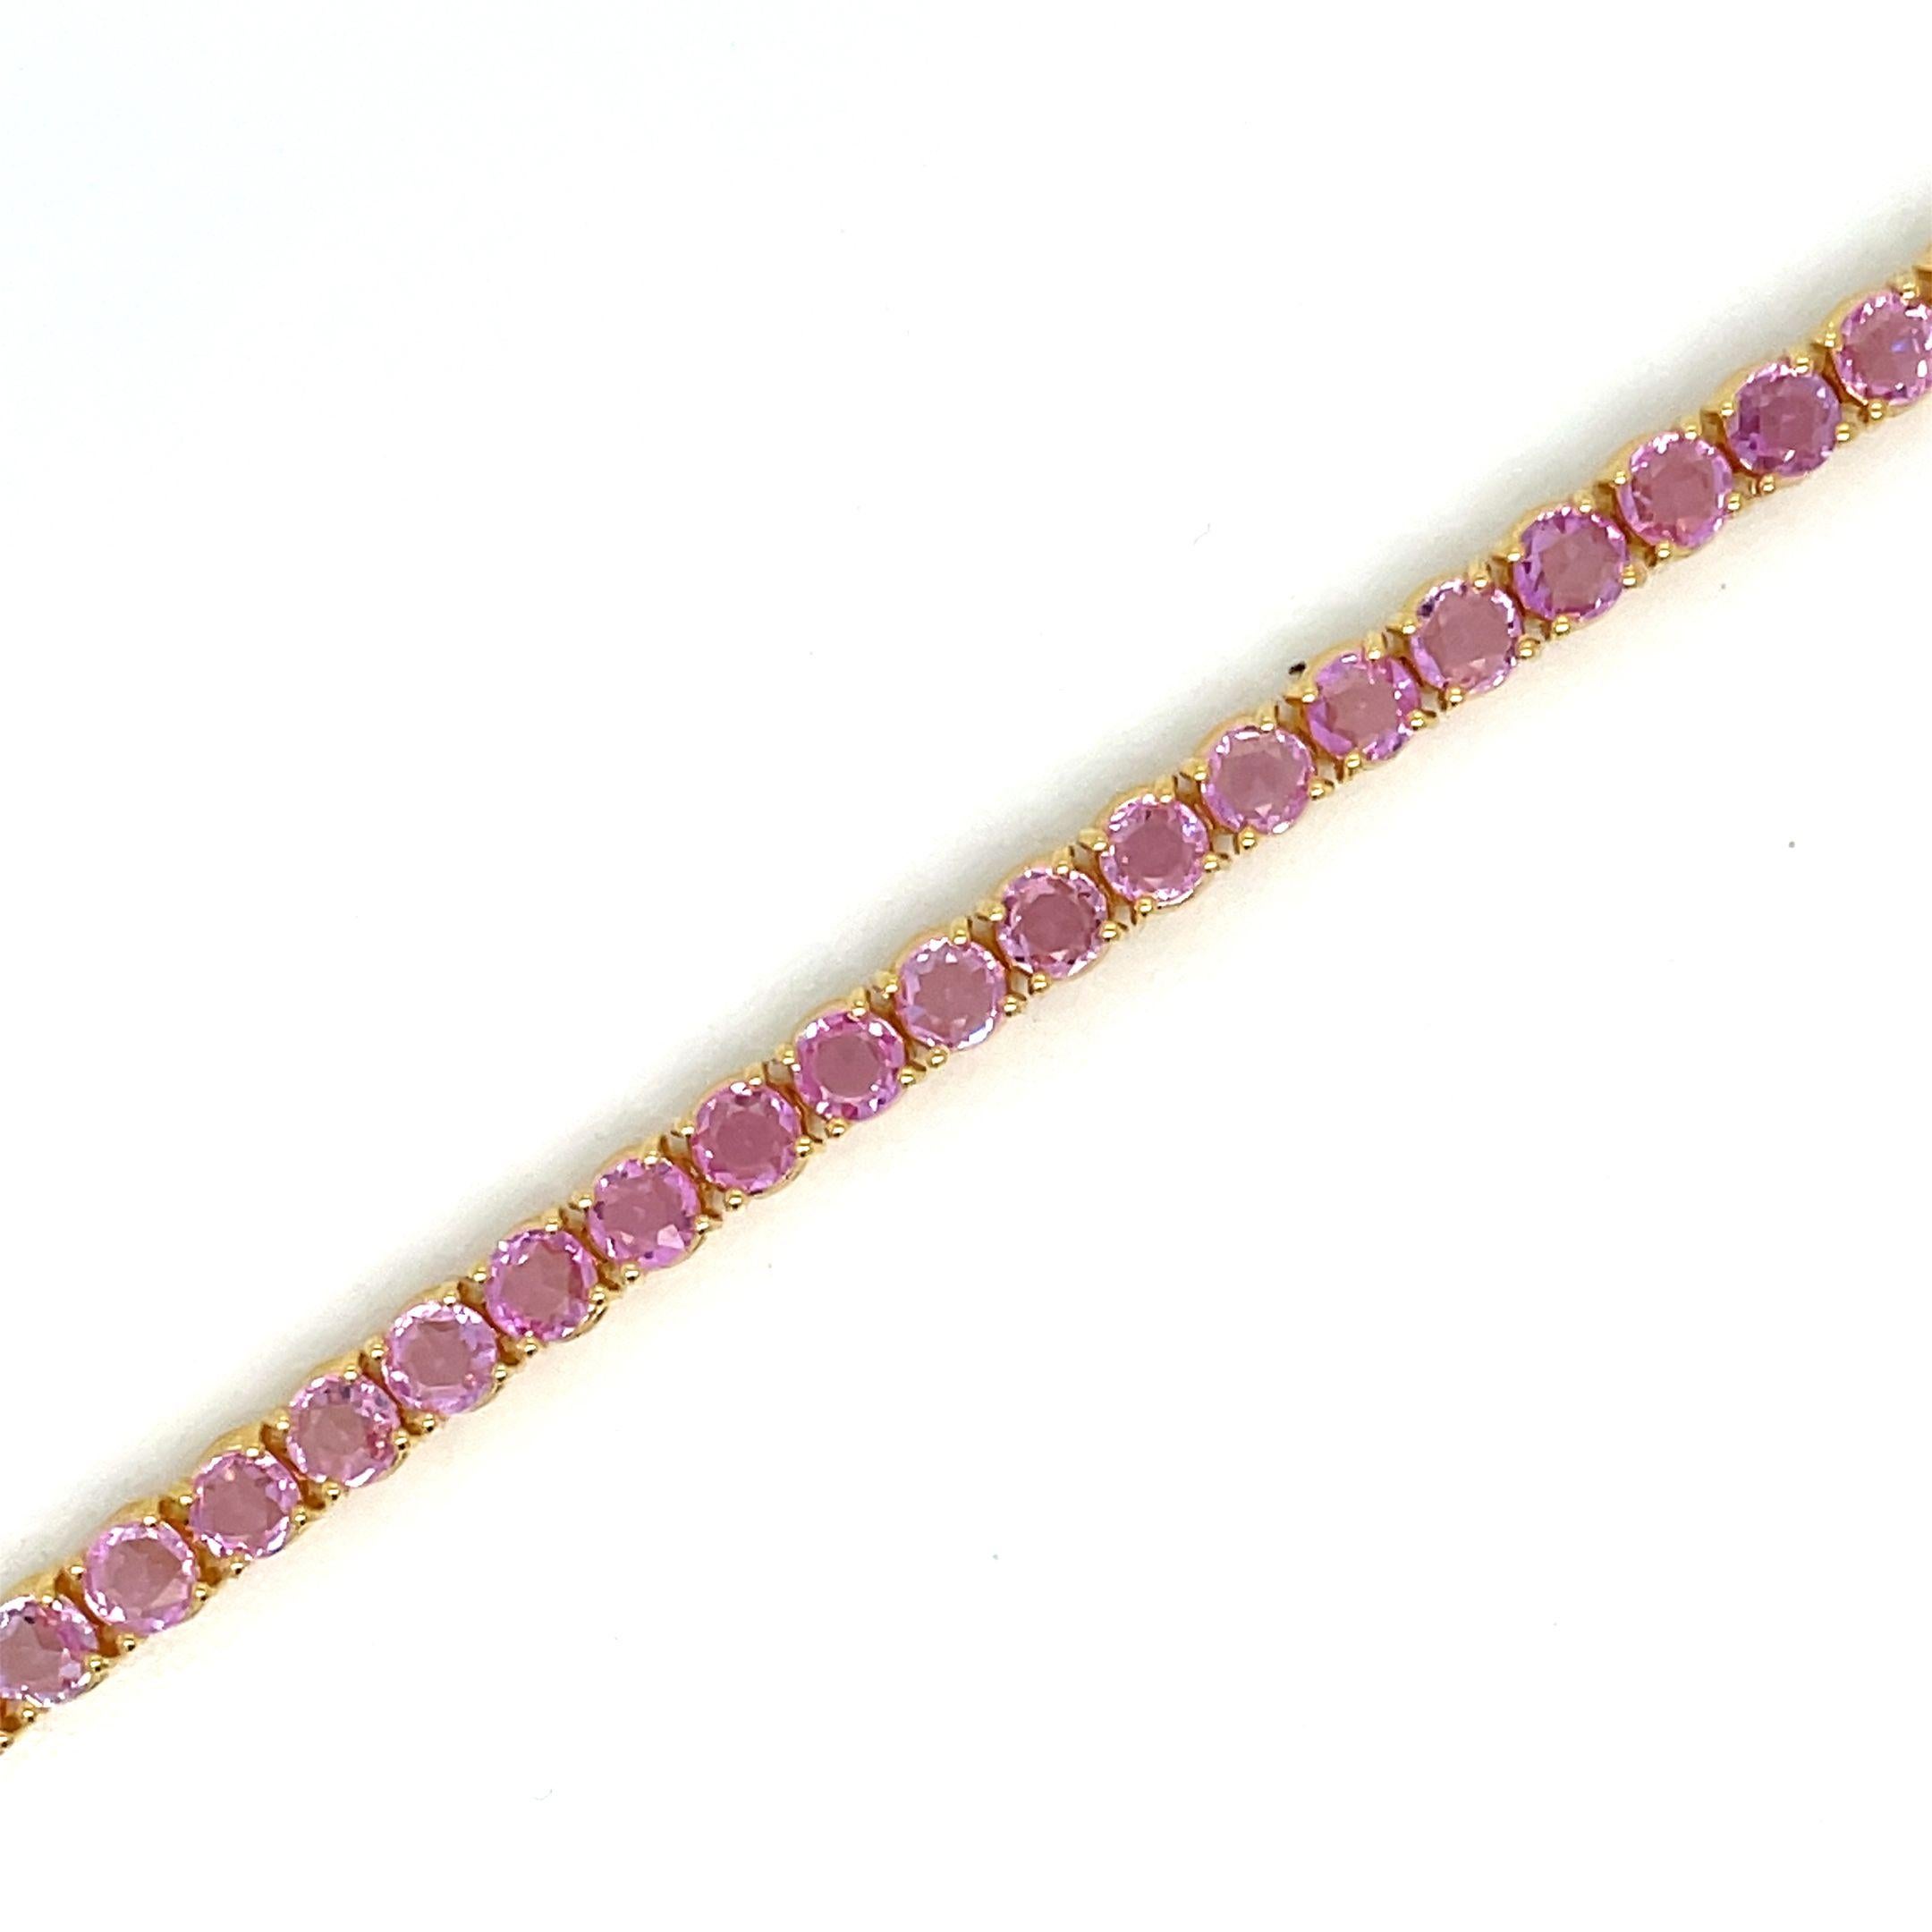 Fabelhaftes, brandneues Armband aus massivem 9-karätigem Gelbgold, besetzt mit 9,60 Karat natürlichen rosa Saphiren mit Rosenschliff und einem Gewicht von je 0,20 Karat (3,50 mm).
Dieses Stück wird in unseren Labors entworfen und hergestellt, dank